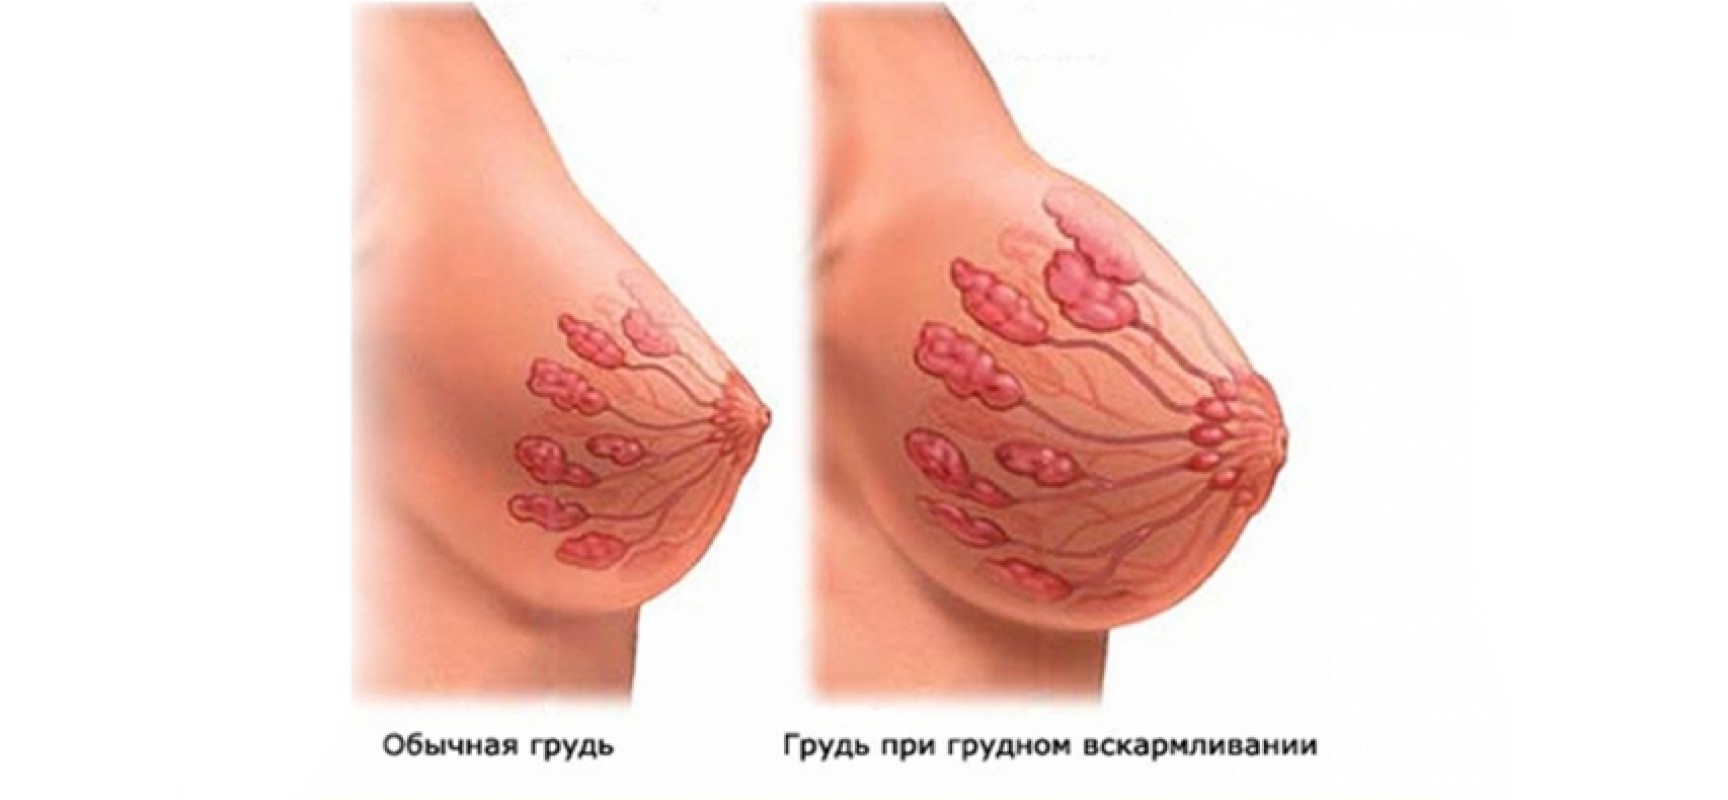 беременность грудь красная (120) фото